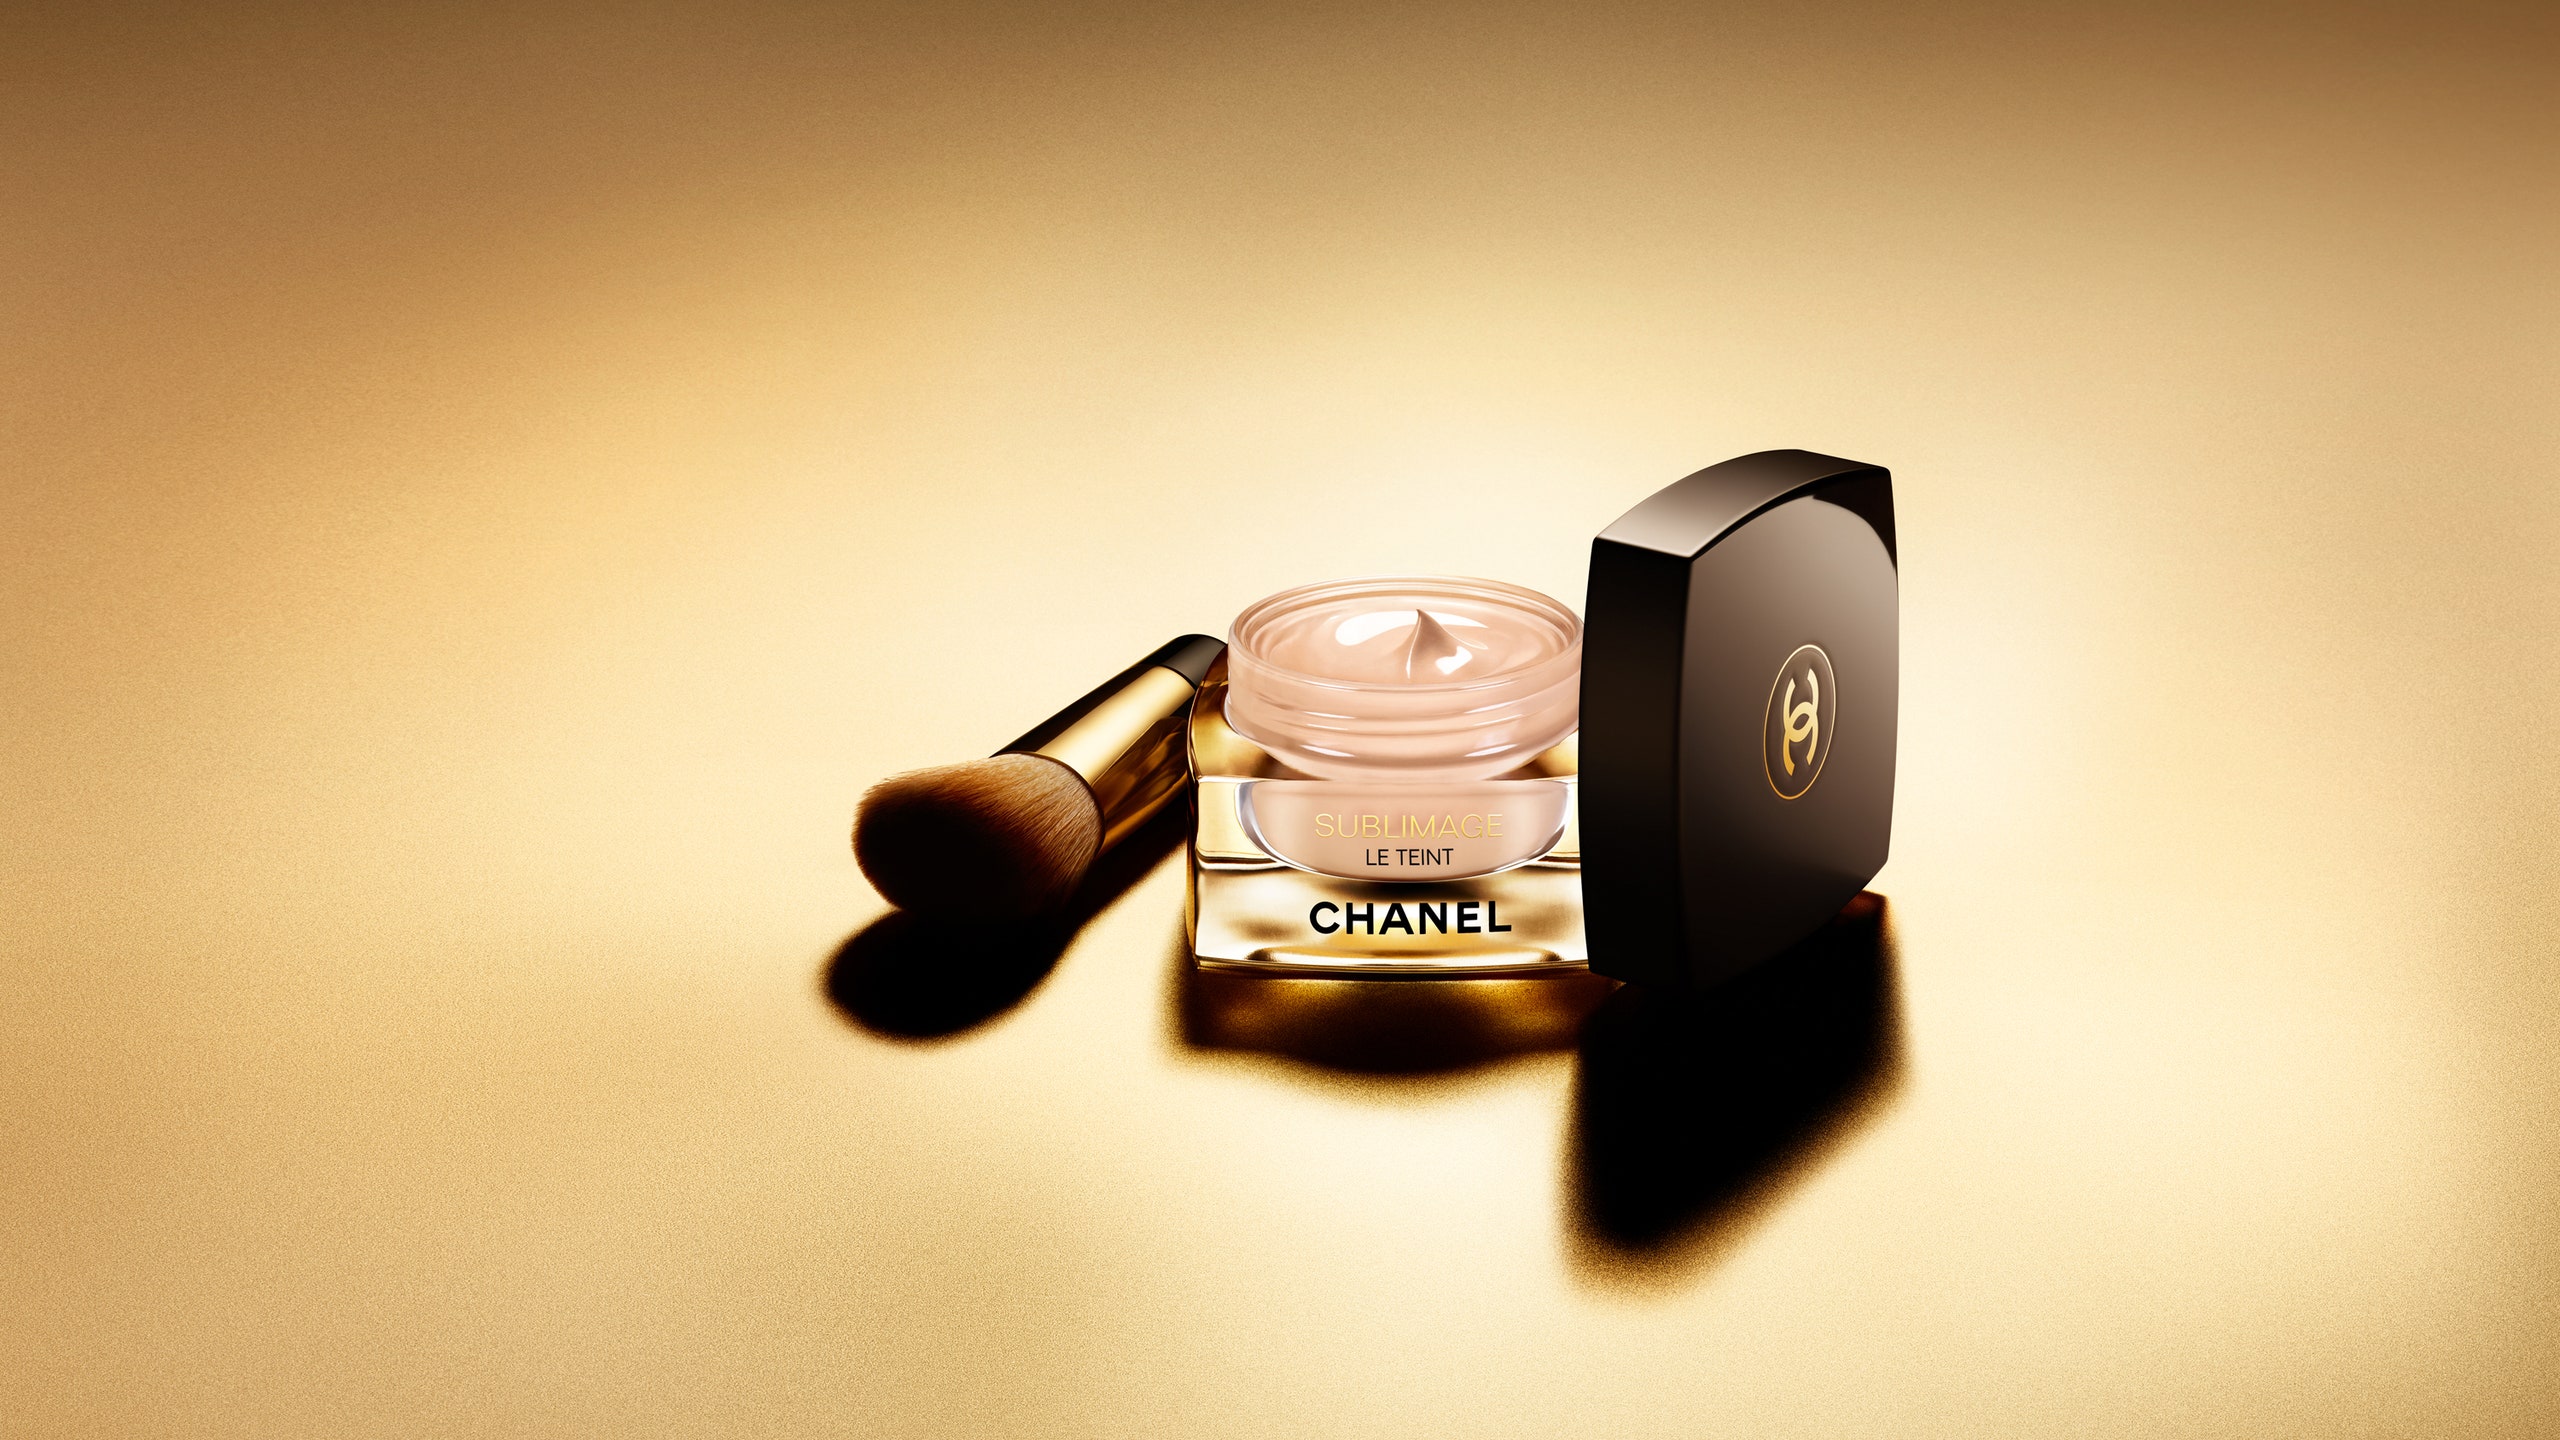 Chanel Sublimage Le Teint тональный кремуход с алмазной пудрой придающей коже сияние | Allure